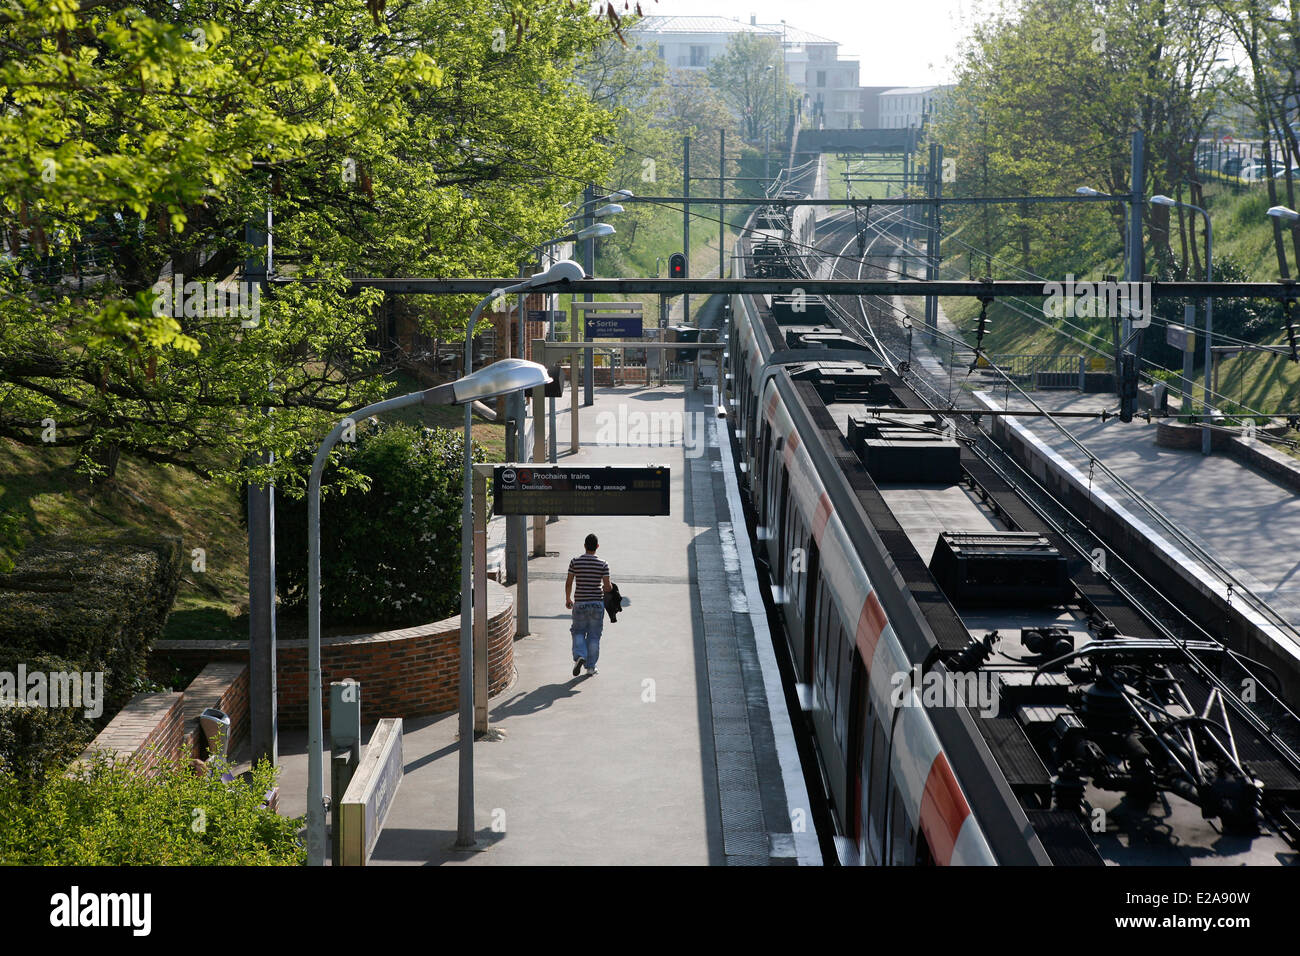 France, Seine et Marne, Noisiel, RER Stock Photo